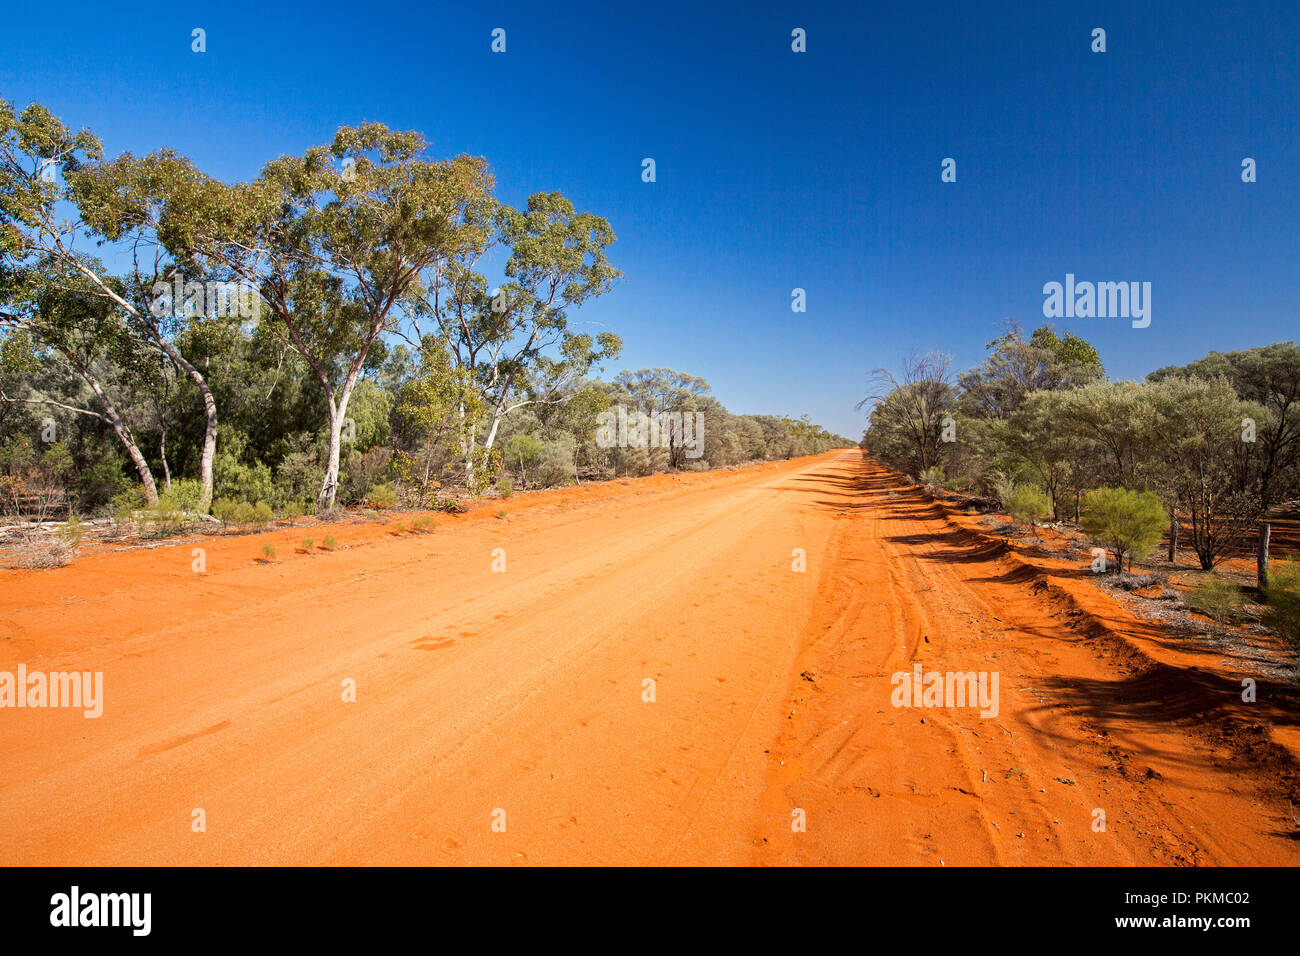 Lange rote australische Outback road Schneiden durch Landschaft mit Buschland und hohen Bäumen verdeckt gumj & Stretching zu Horizont unter blauem Himmel Stockfoto